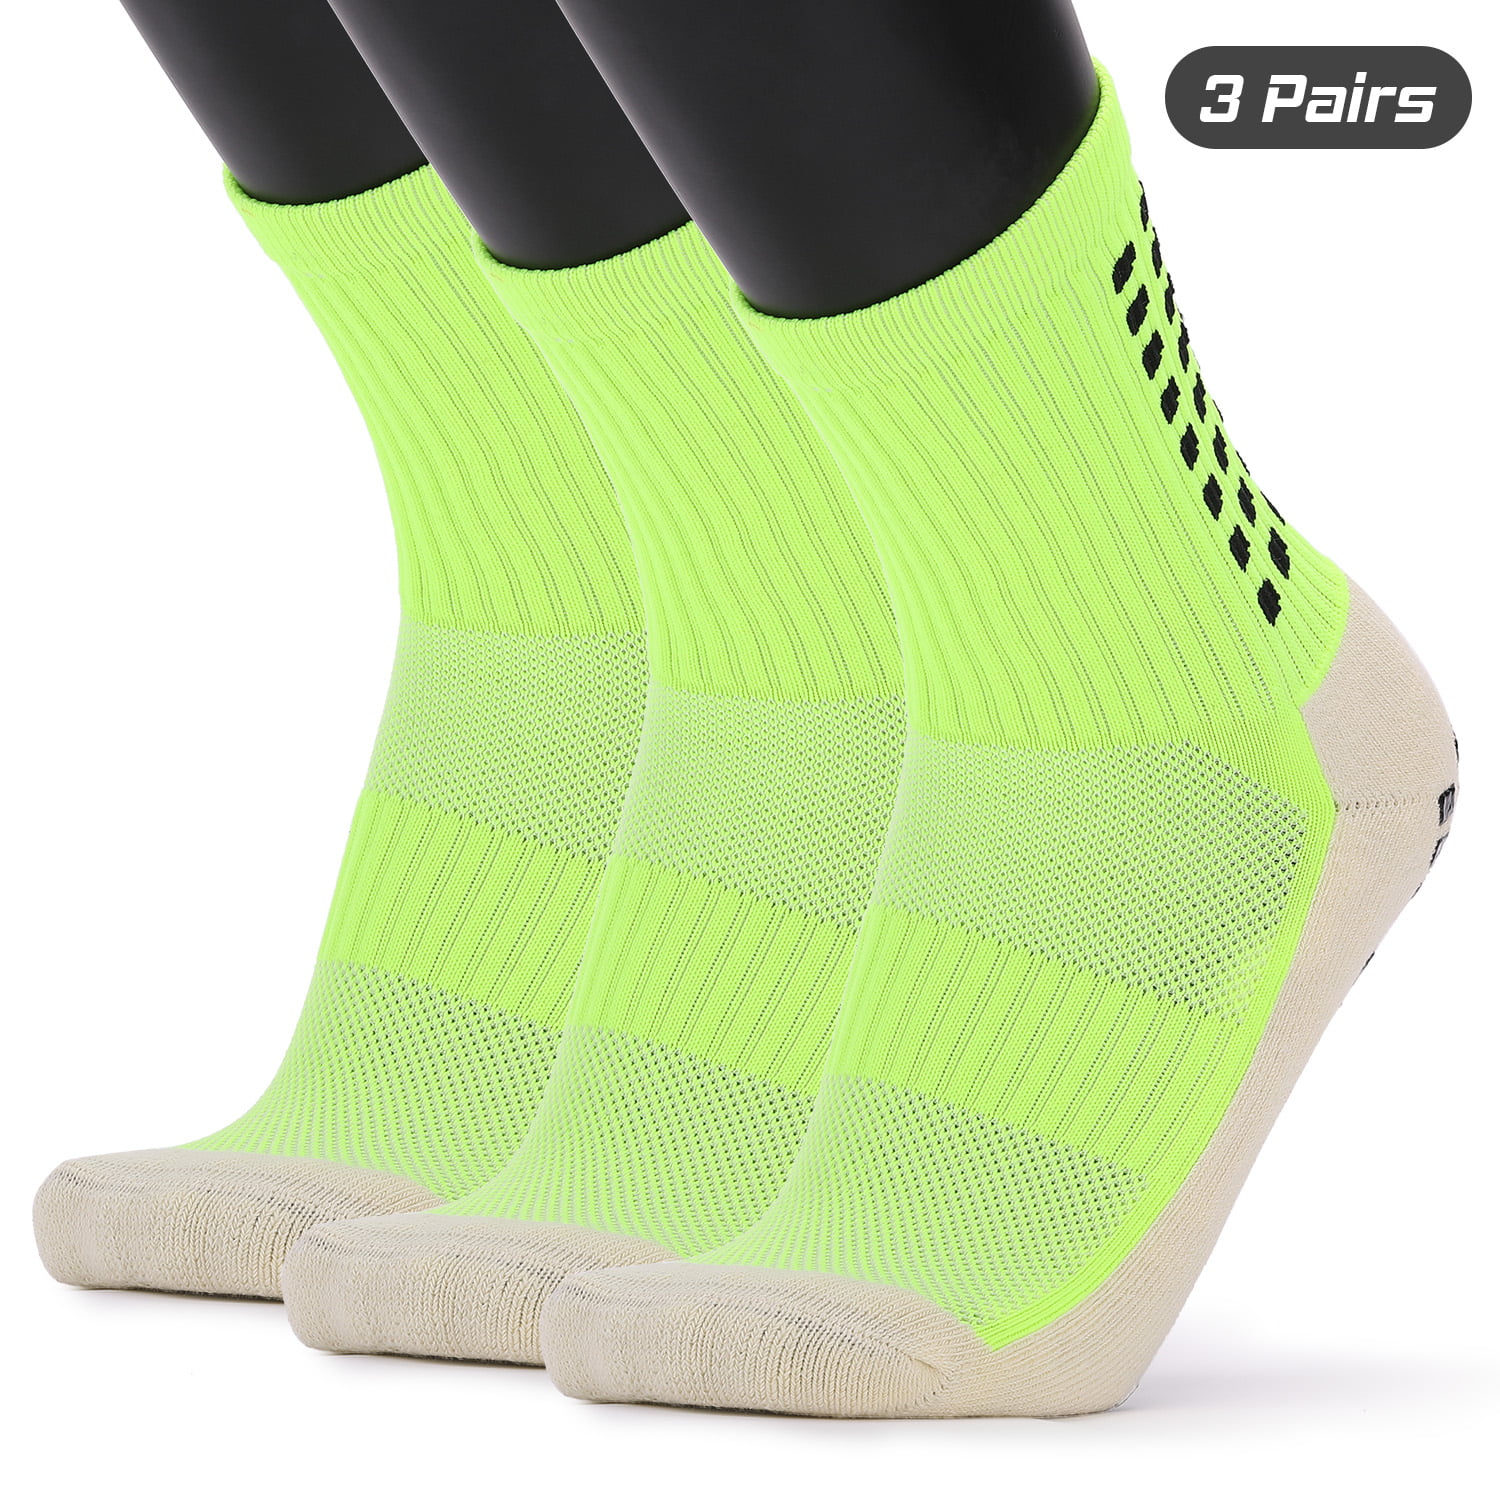 soccer grip socks